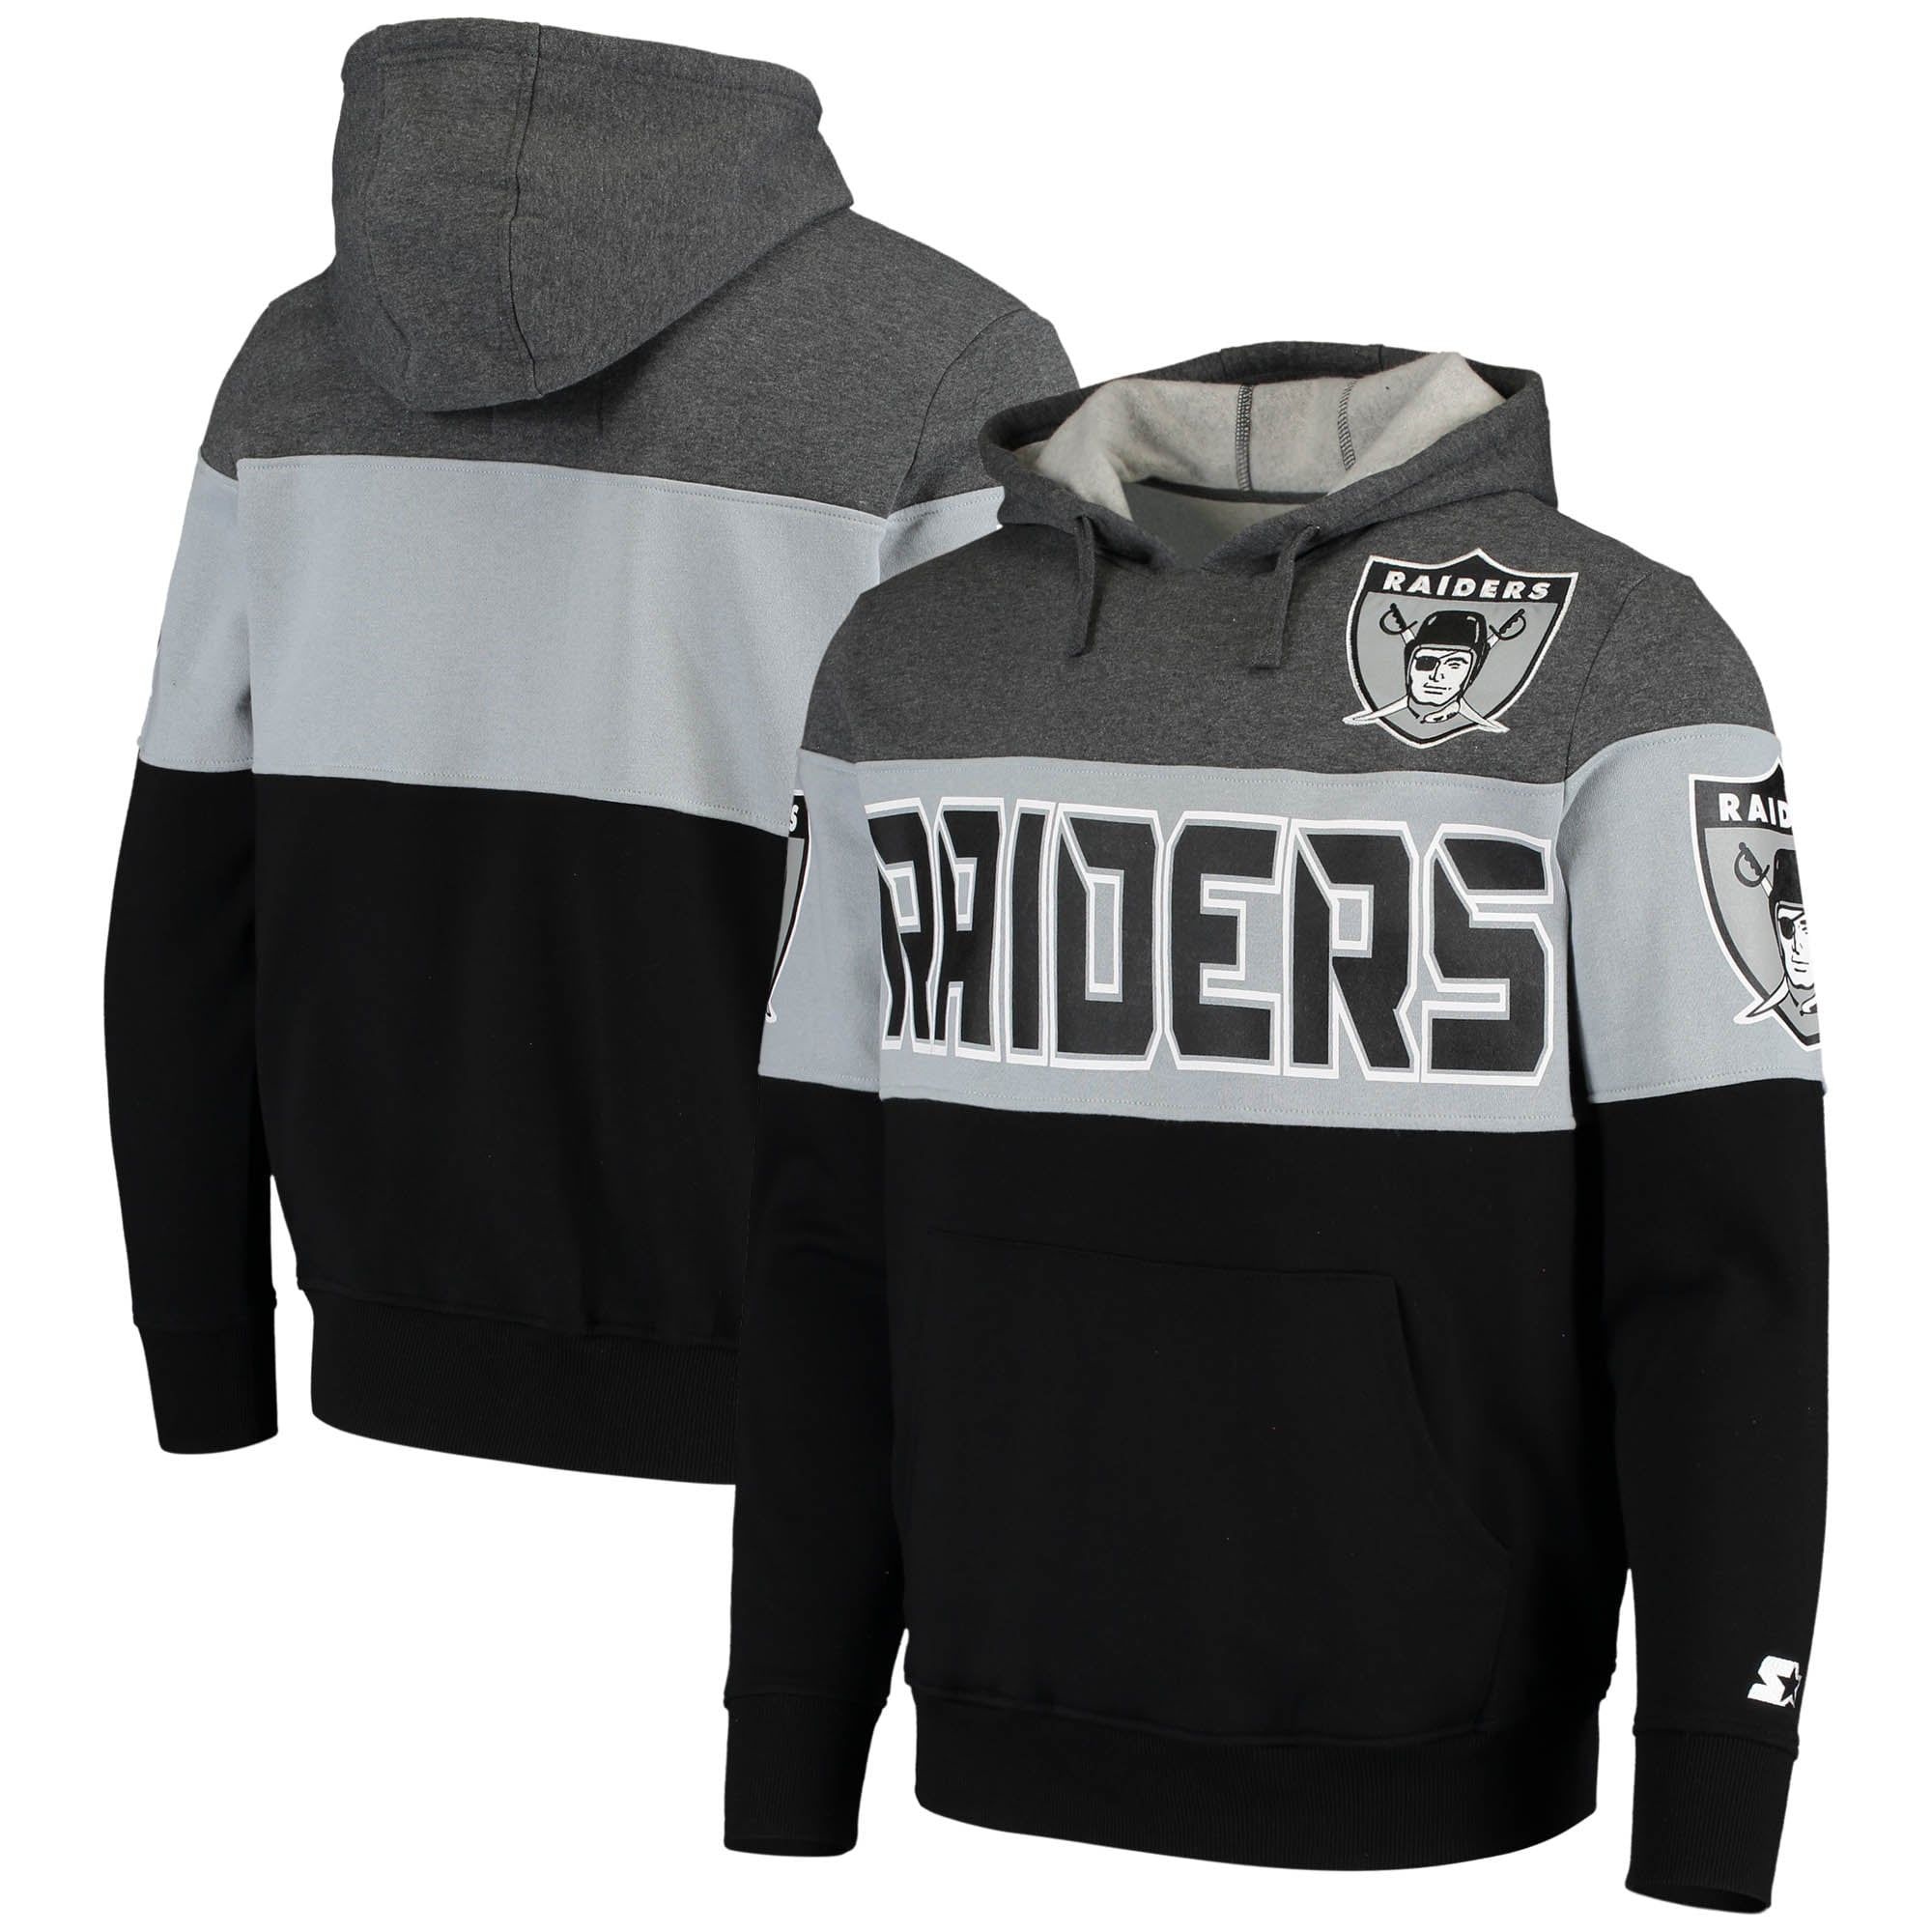 Las Vegas Raiders Mens Hoodie Pullover Jumper Sweatshirt Hooded Fans Top UK 